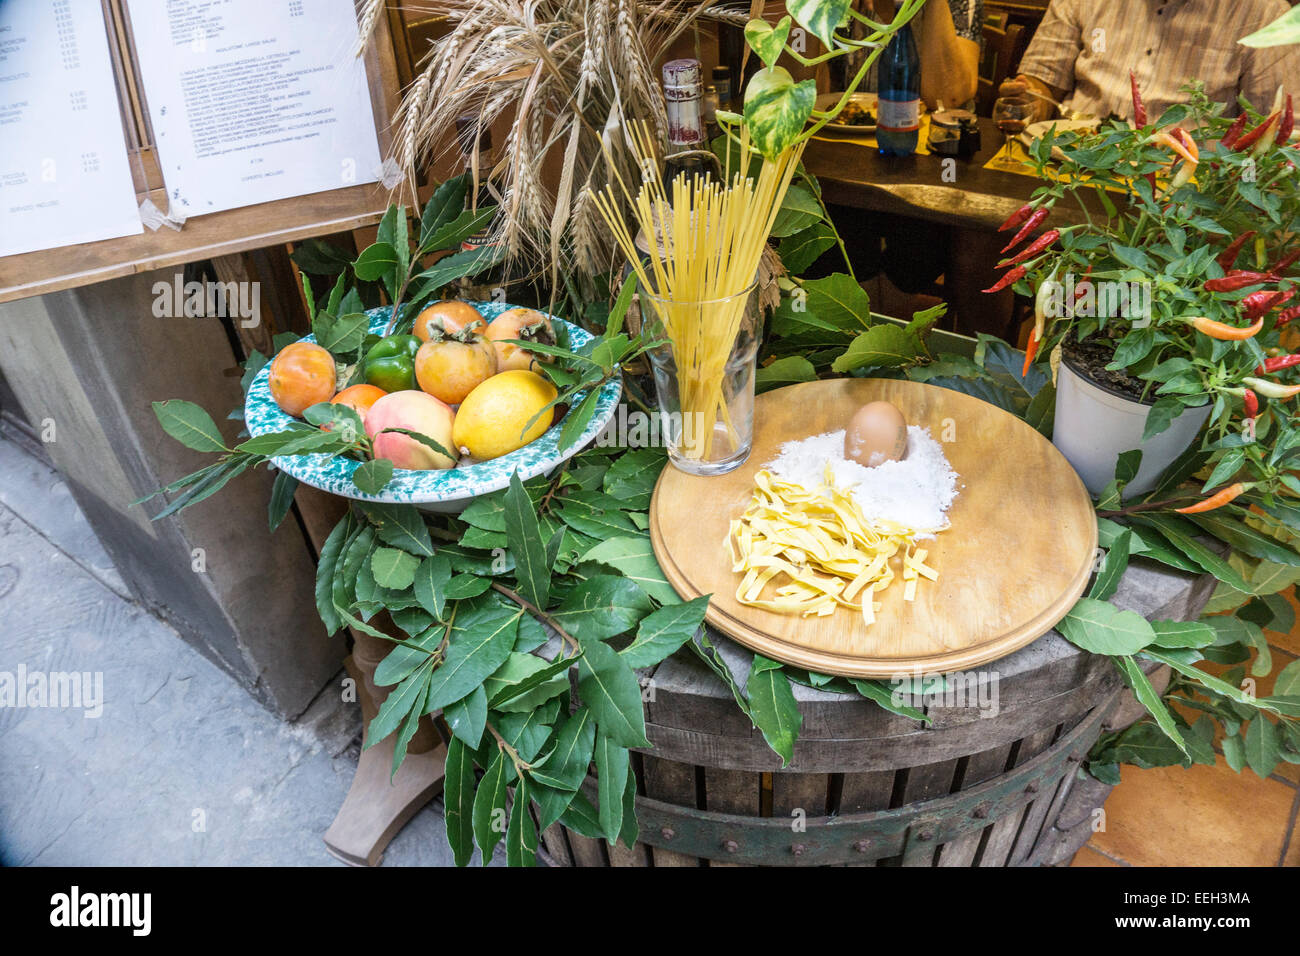 schöne Darstellung der Nudeln Ei Reis Obstbau Paprika & anderen frischen Zutaten vor dem informellen Restaurant trattoria Stockfoto